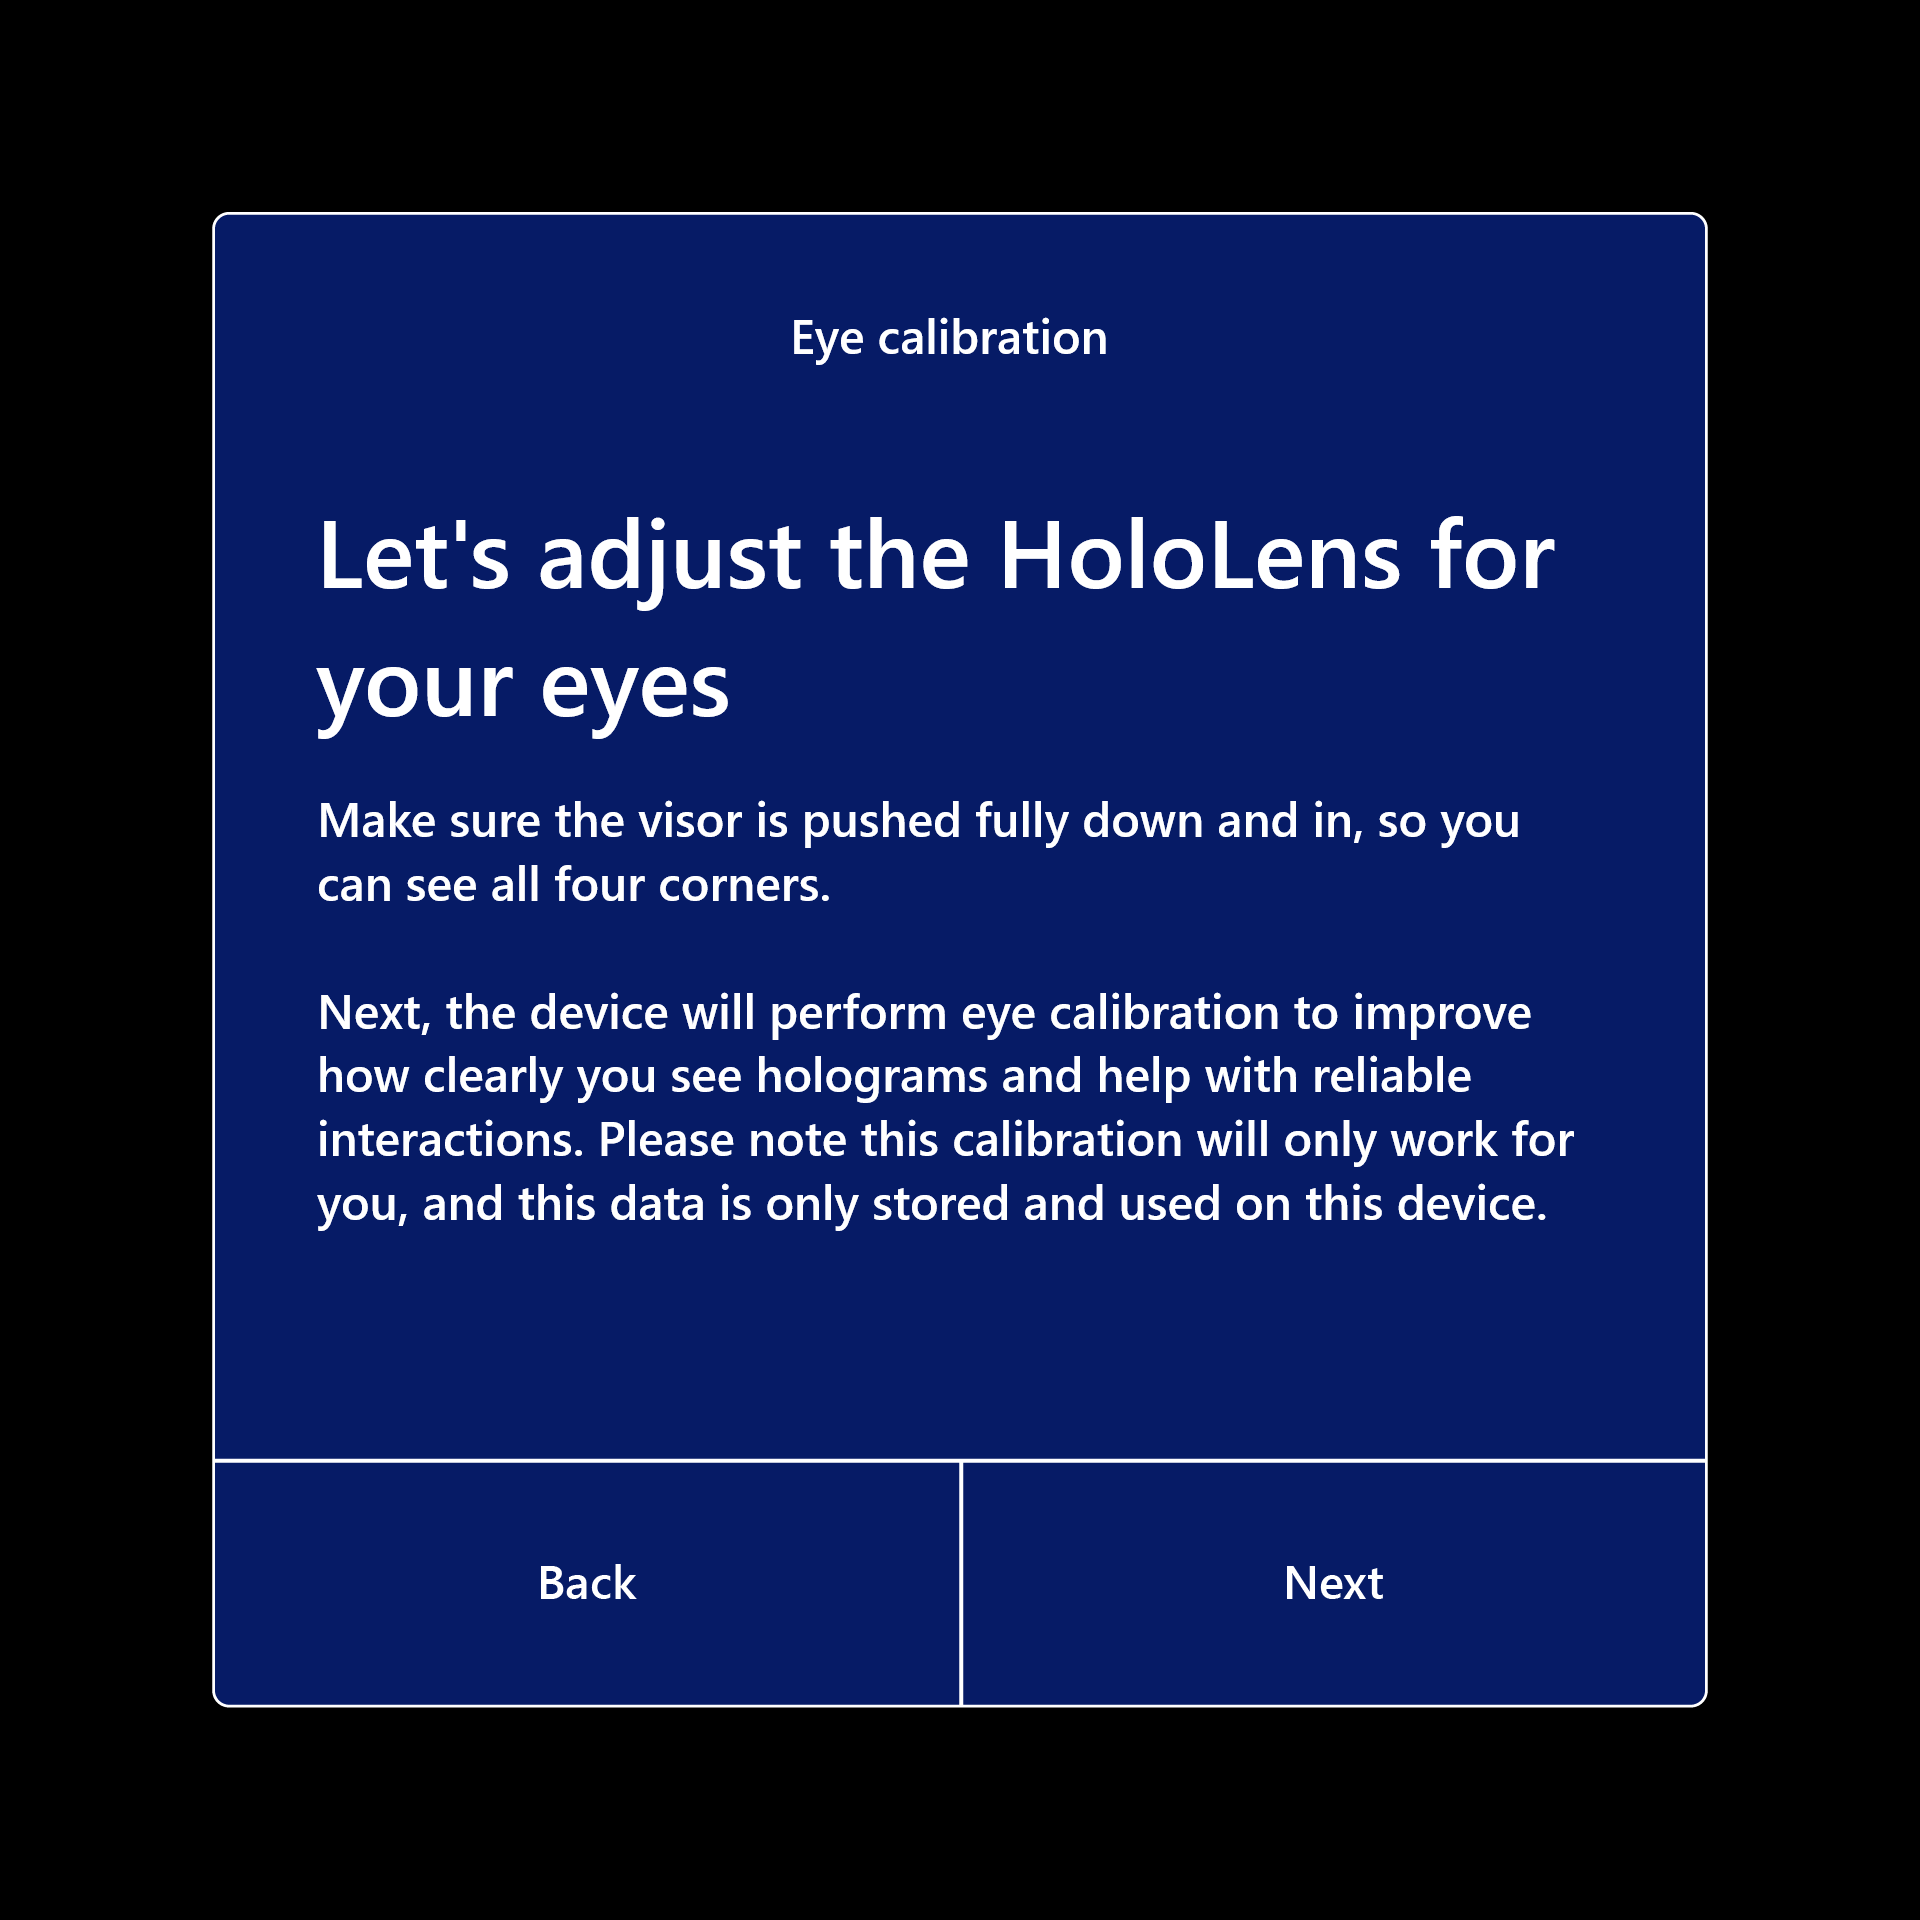 Veuillez ajuster l’HoloLens pour vos yeux afin que l’étalonnage puisse continuer.